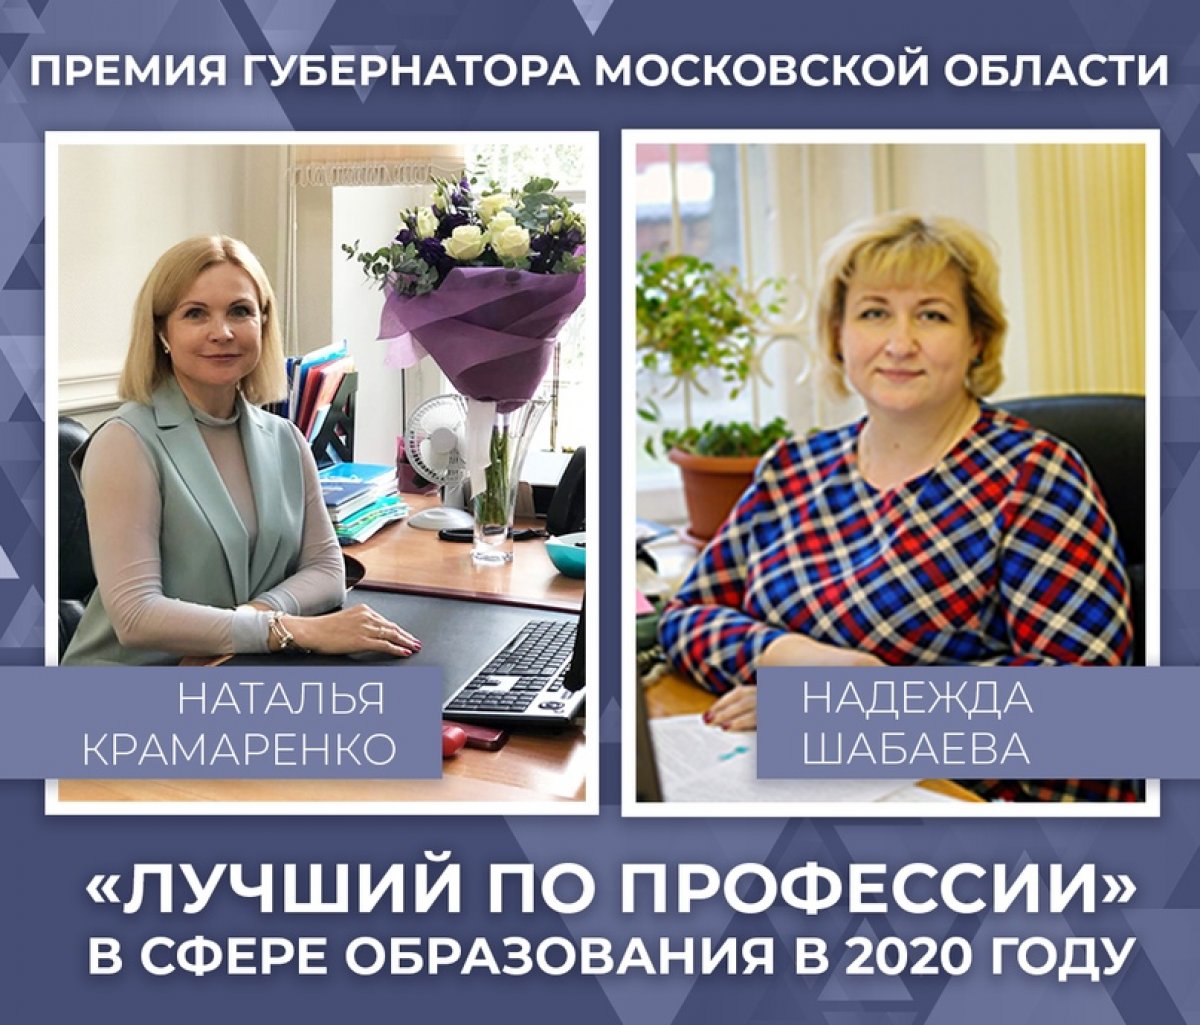 Сотрудники нашего университета получили премии Губернатора Московской области «Лучший по профессии» в сфере образования в 2020 году.⠀